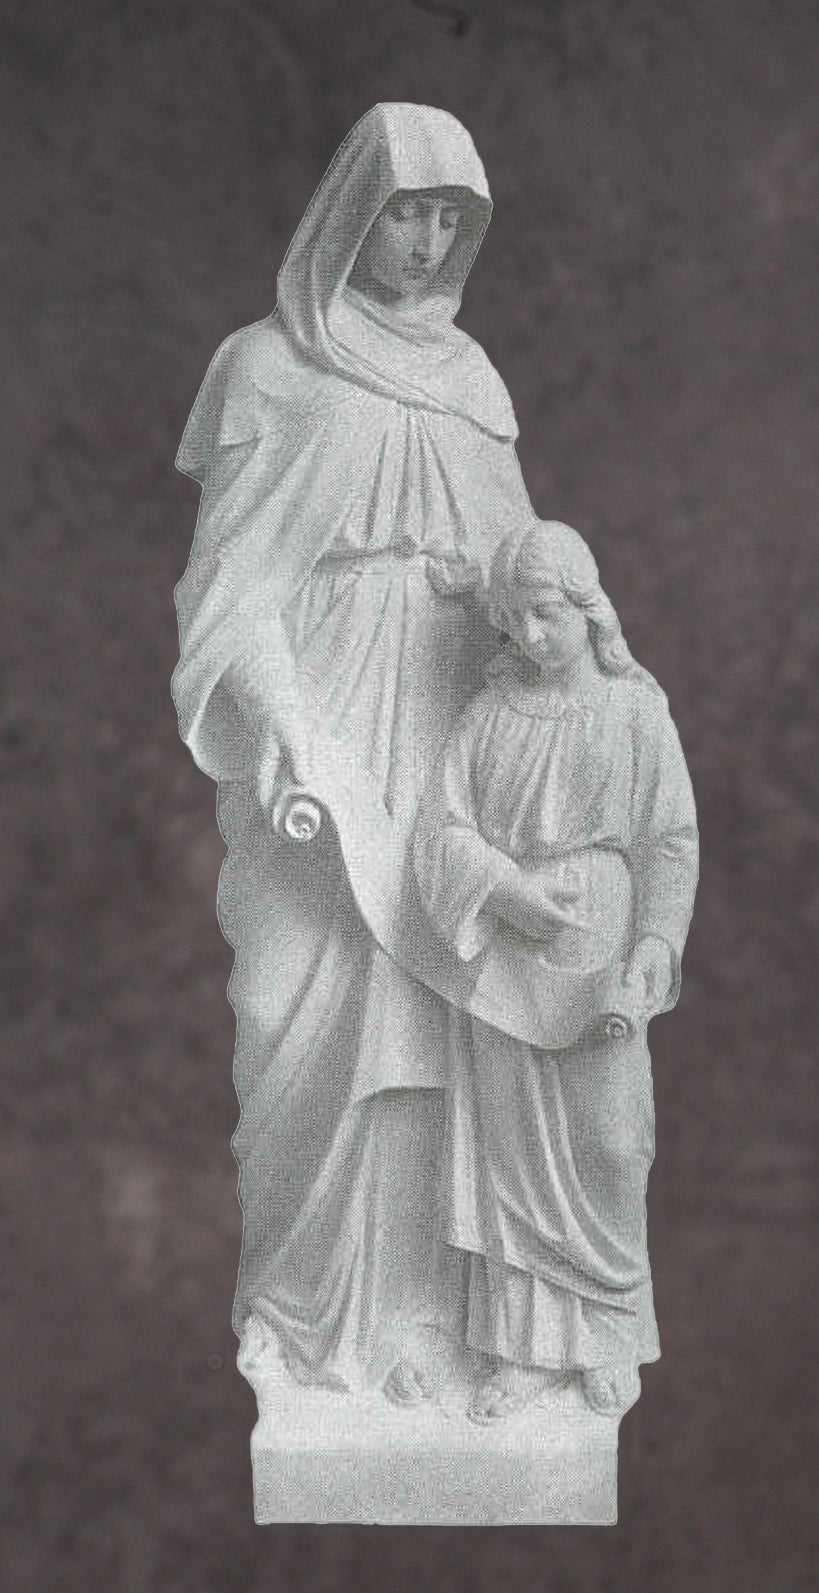 Saint Anne Marble Statue - 72”H